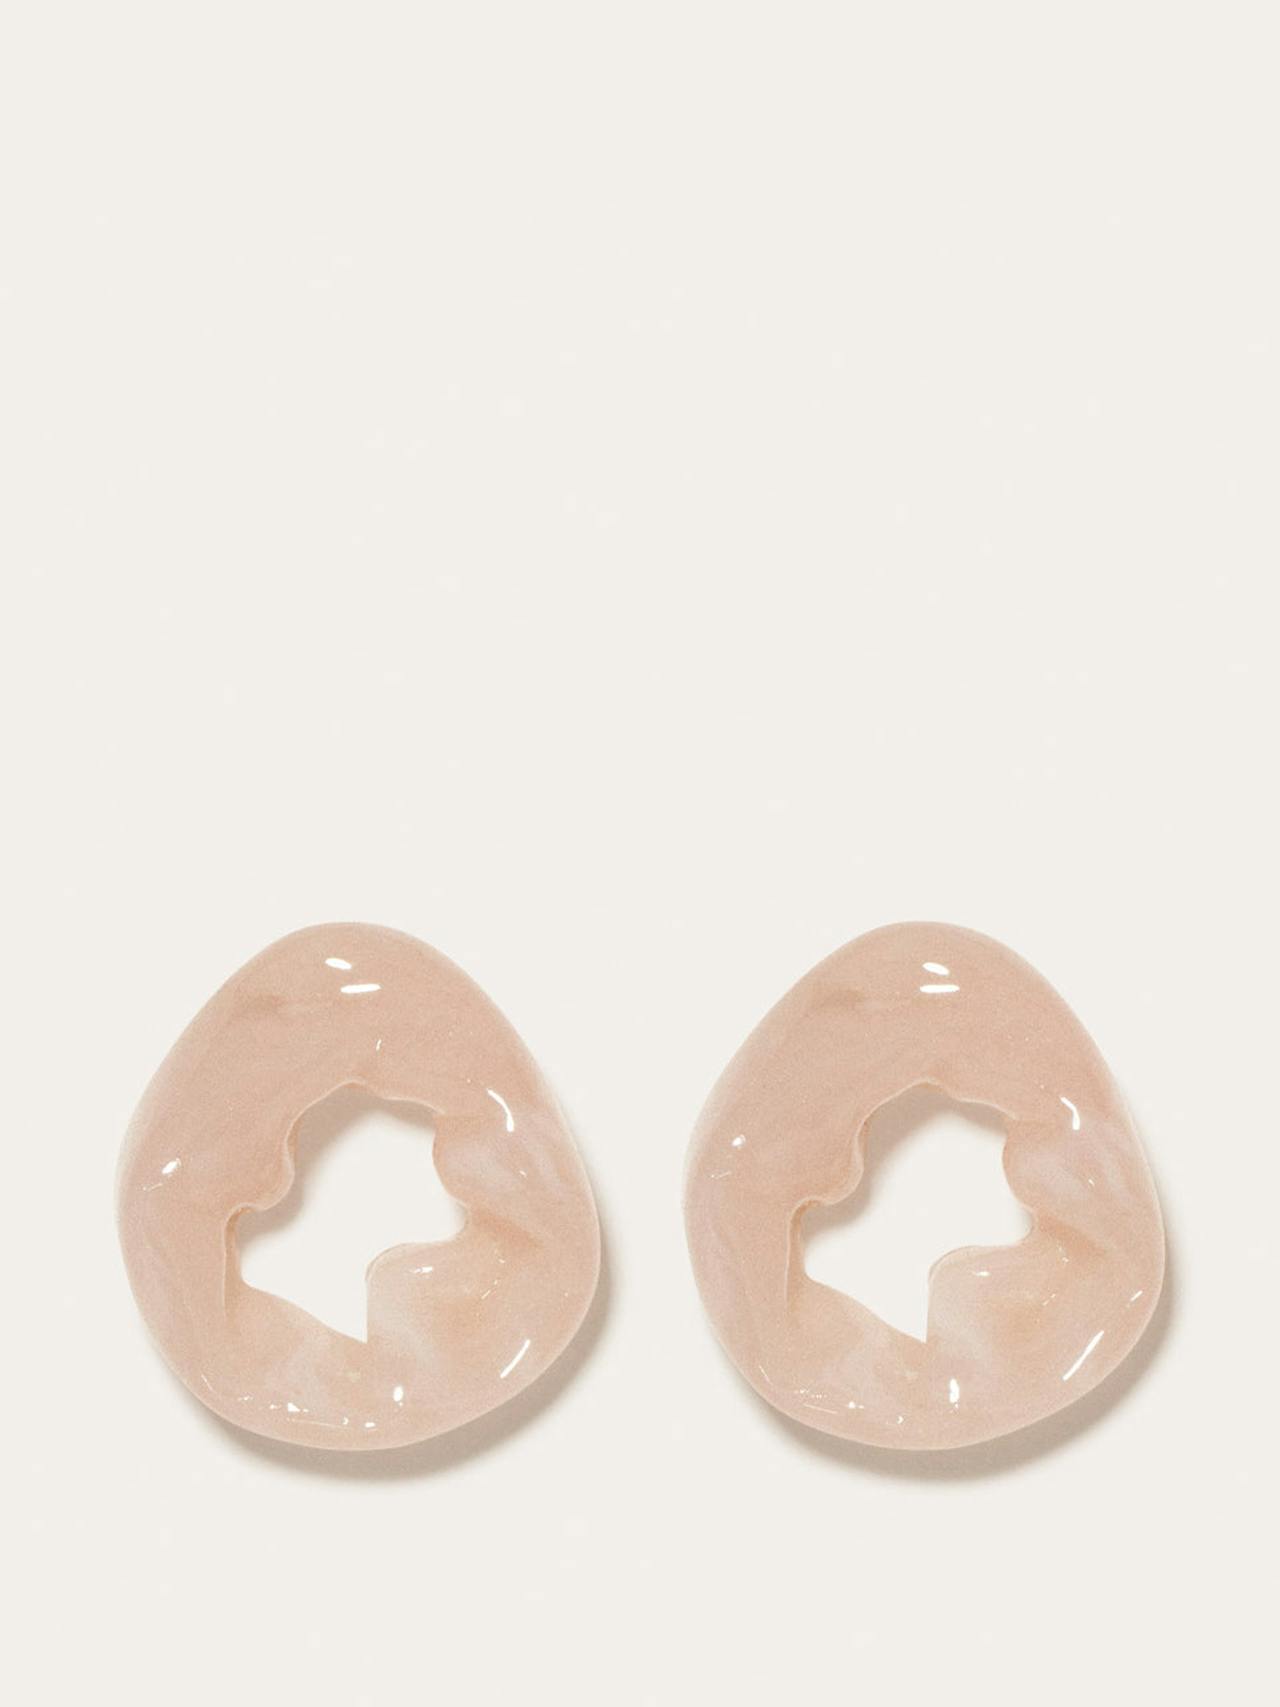 Rose quartz resin and gold Scrunch earrings